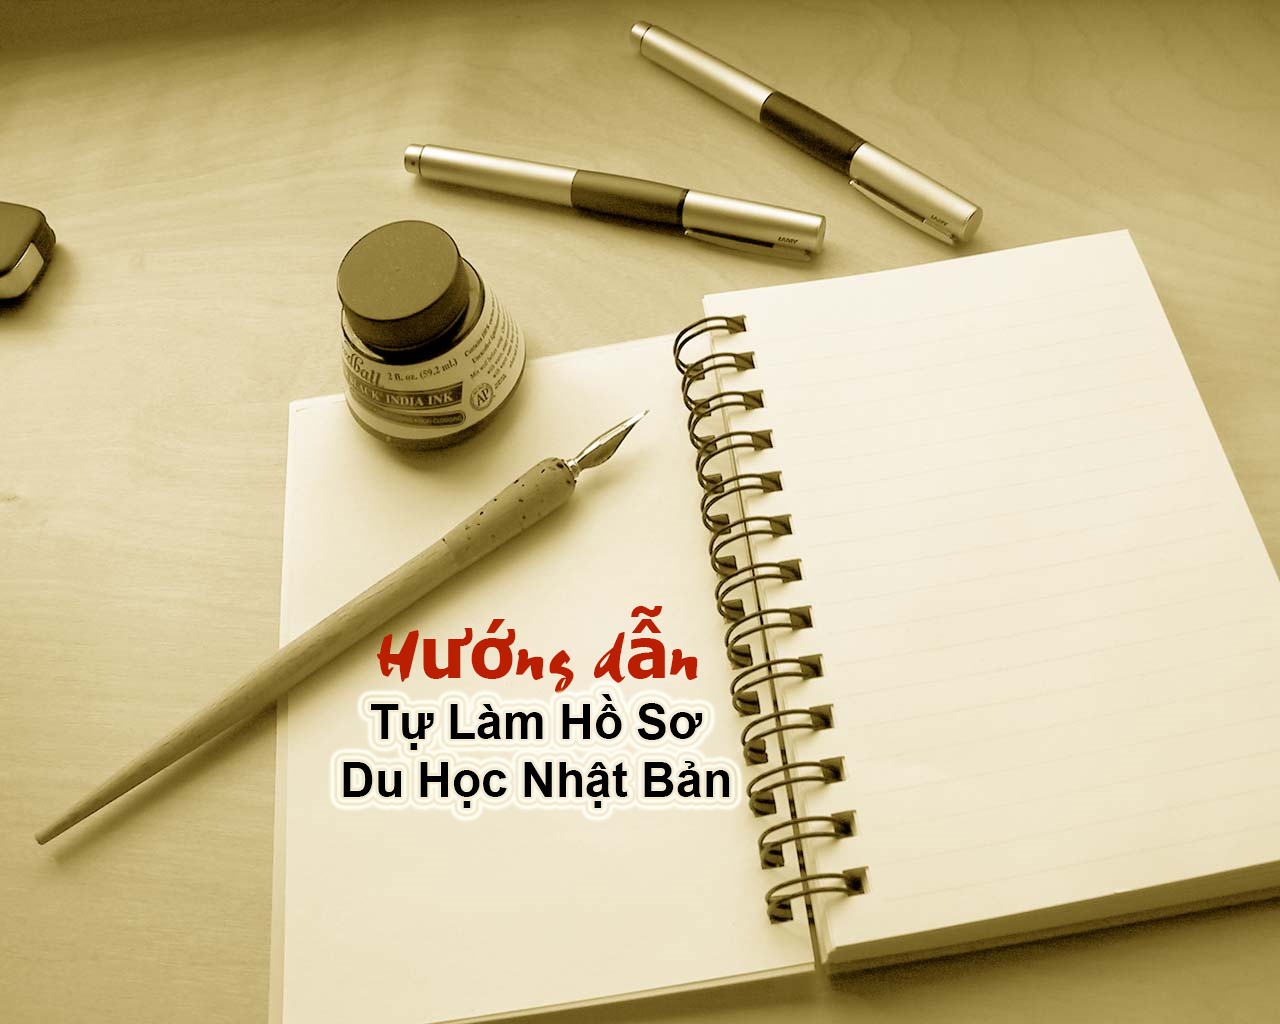 Tư vấn hồ sơ du học - Dịch Thuật Việt Mỹ - Công Ty TNHH MTV Dịch Thuật Tư Vấn Việt Mỹ